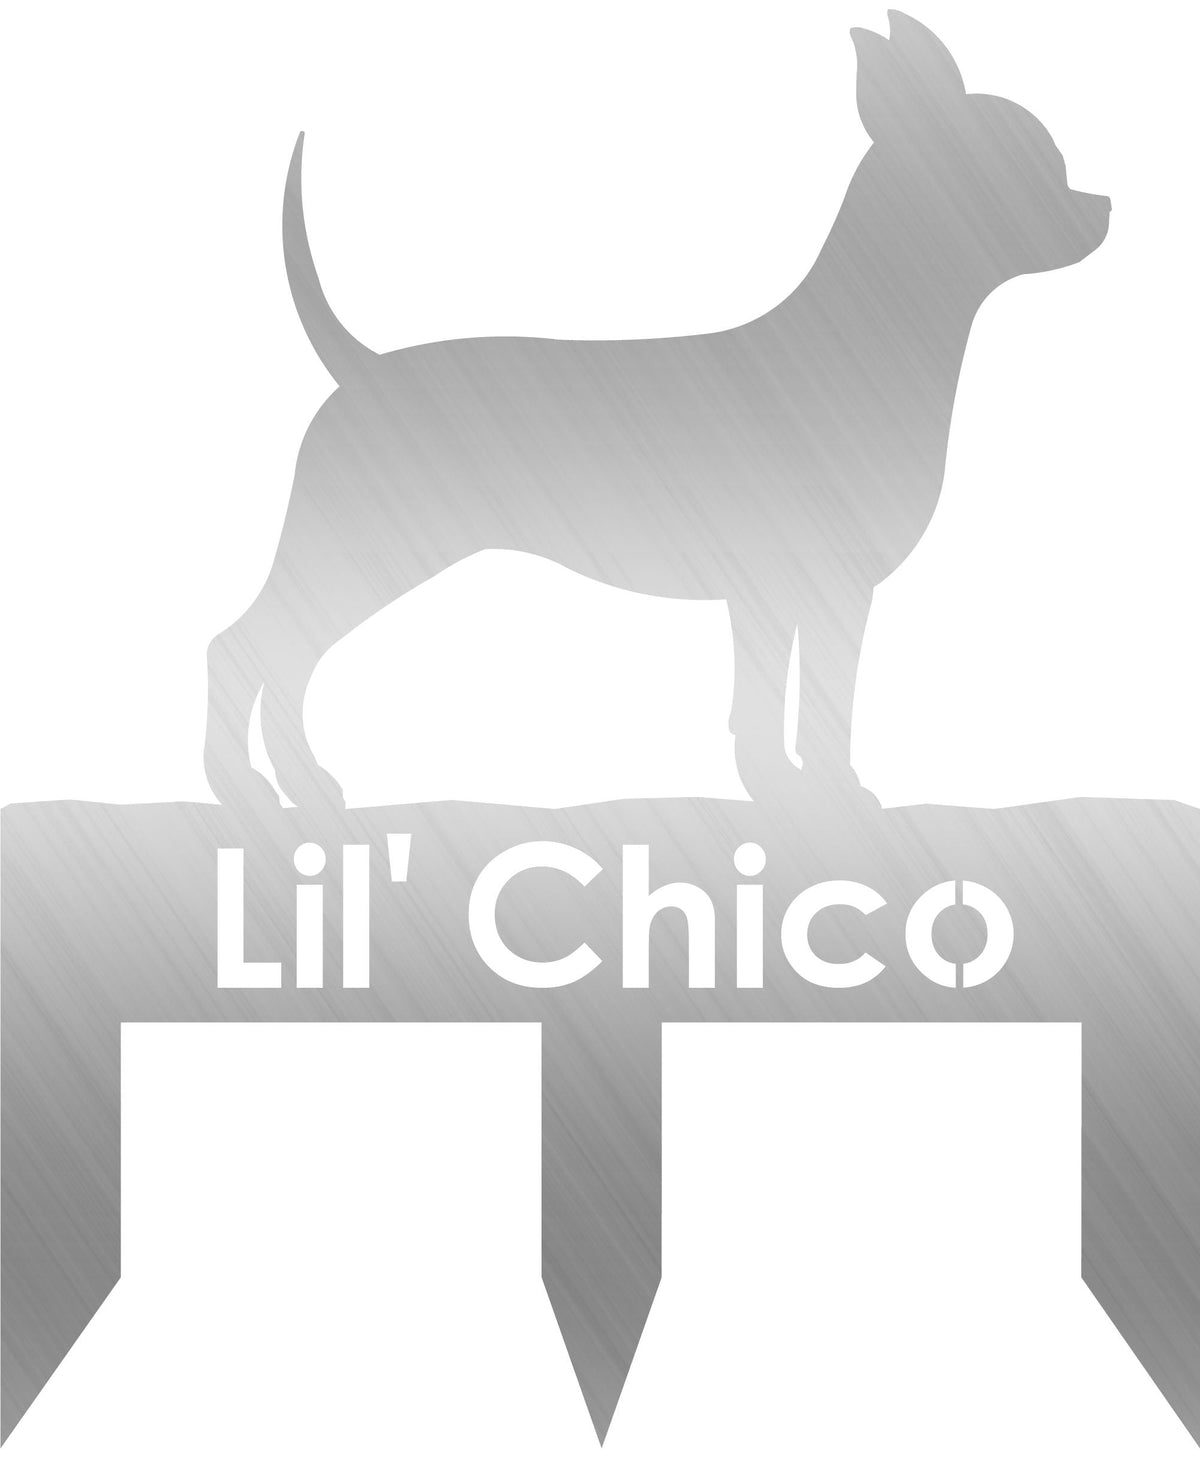 Chihuahua dog address stake